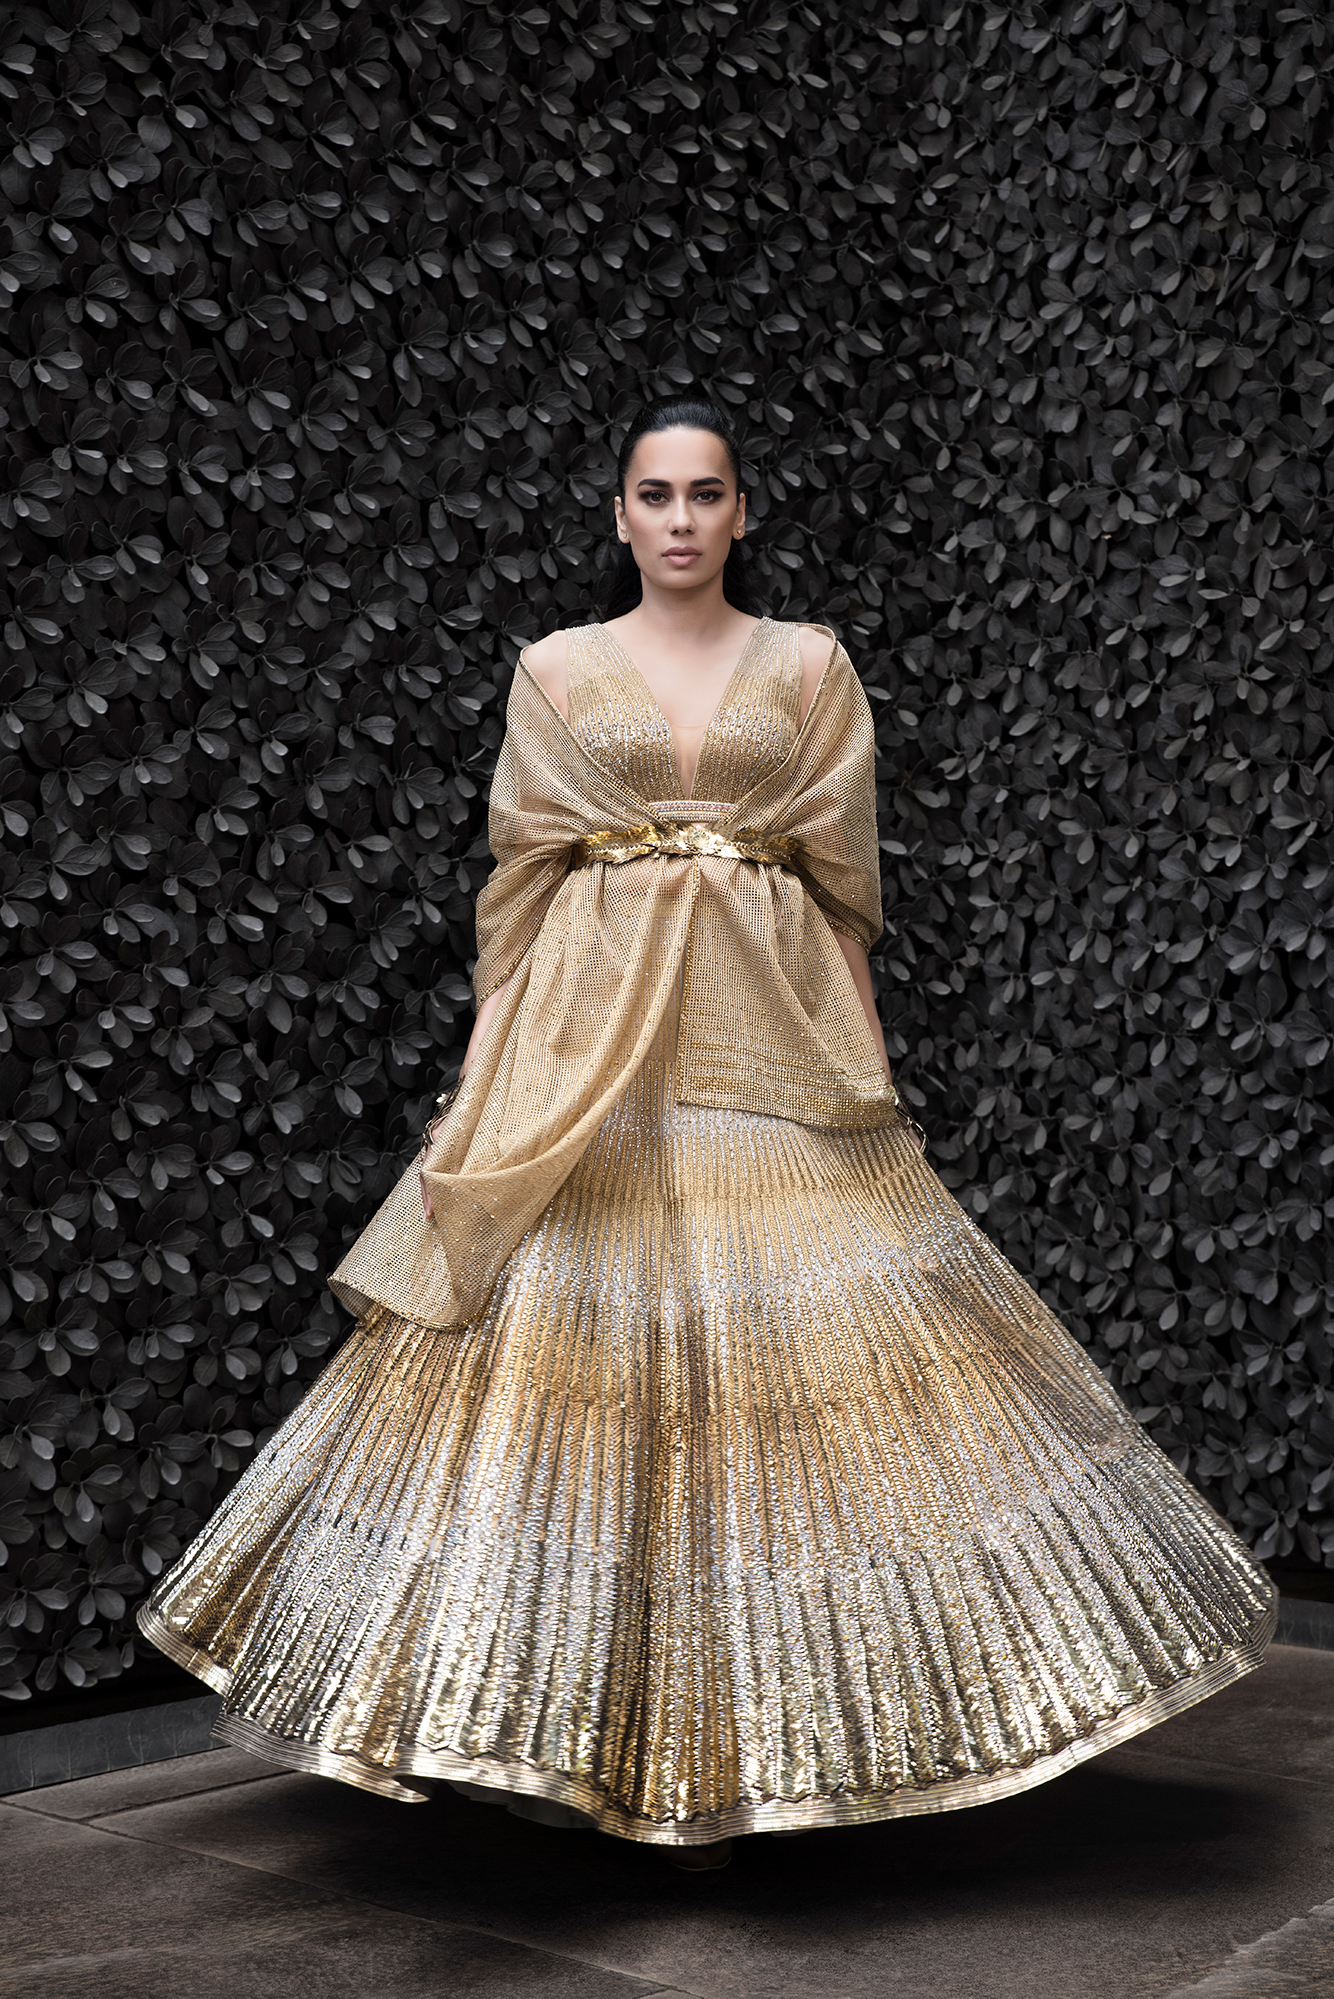 India Bridal Fashion Week: Part 1: JJ Valaya, Shantanu & Nikhil